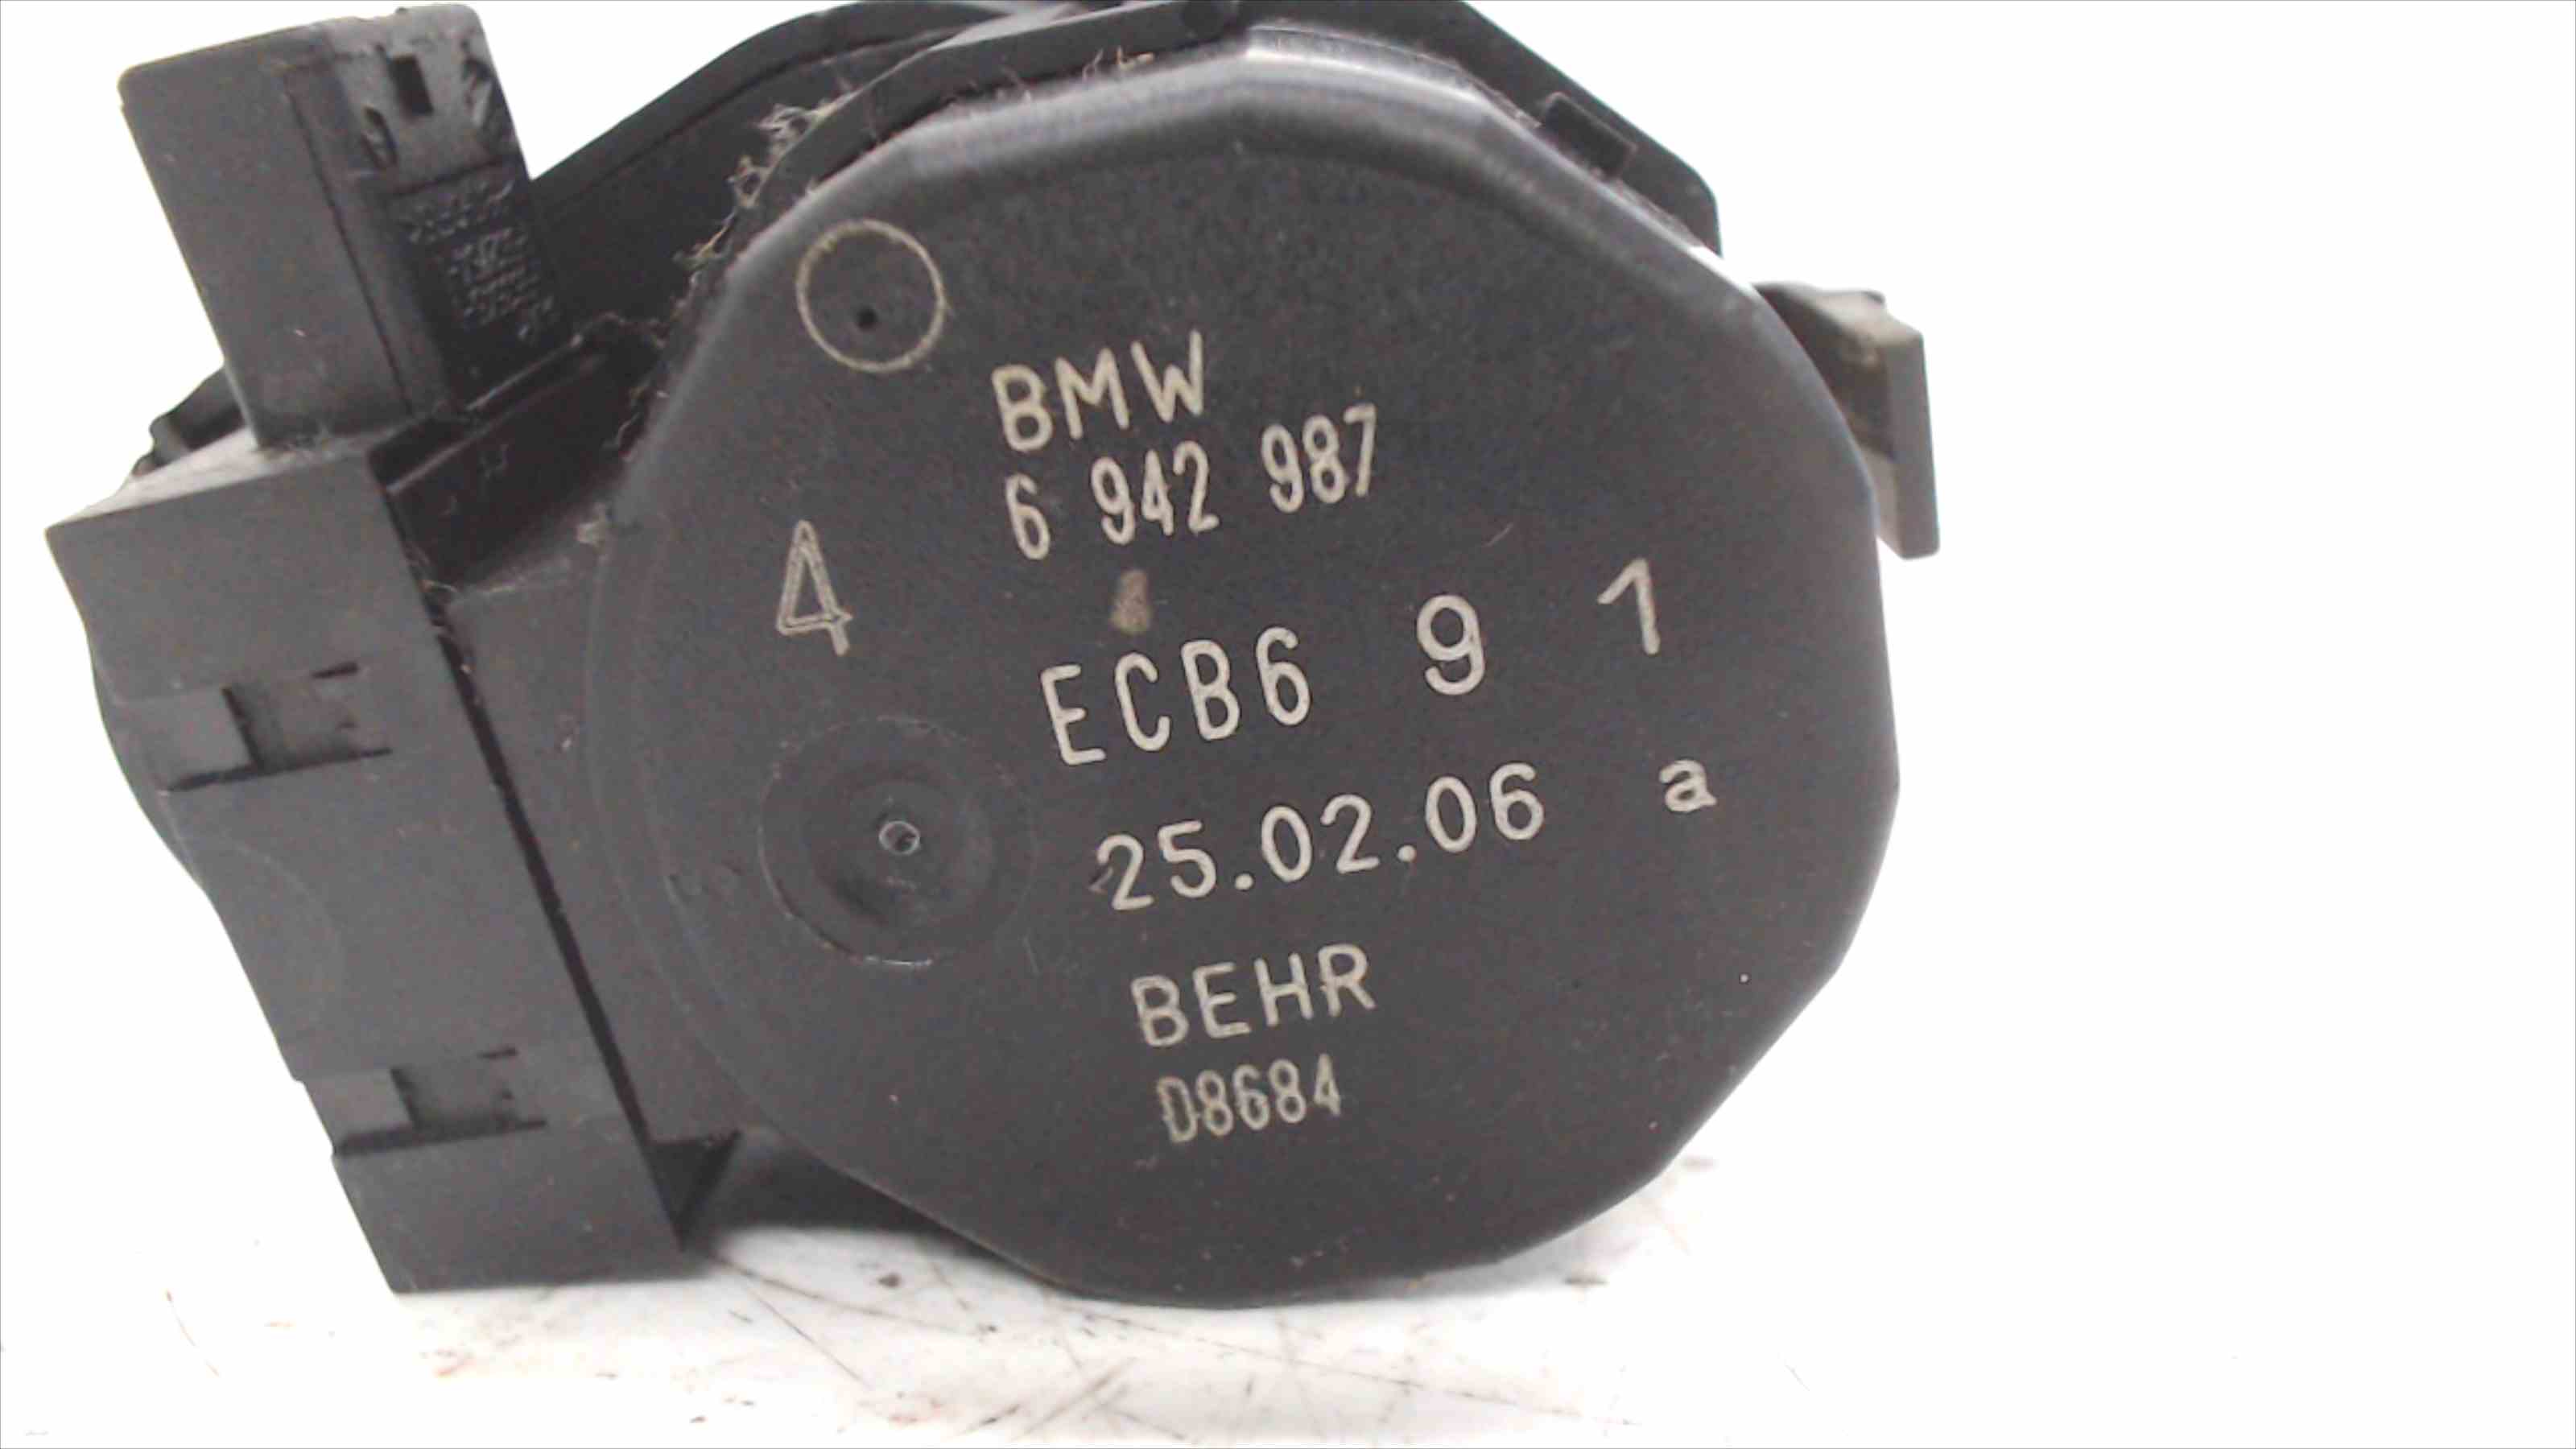 BMW 5 Series E60/E61 (2003-2010) Air Conditioner Air Flow Valve Motor 6942987 24691124